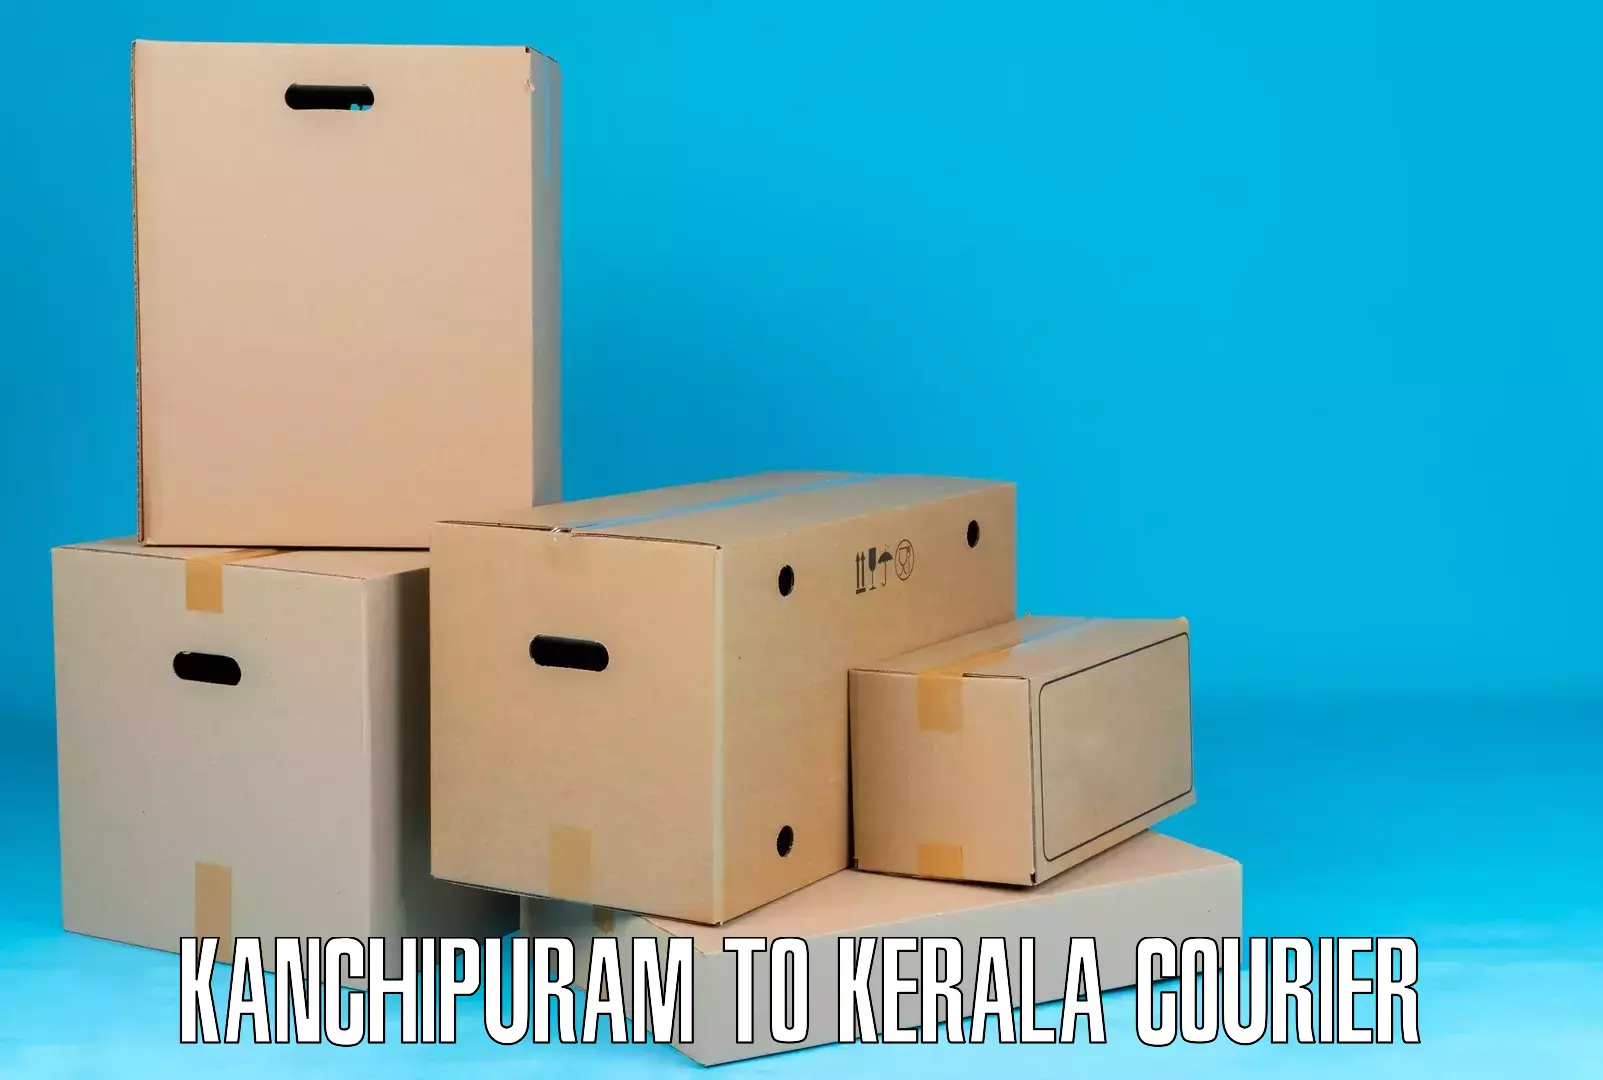 International courier networks Kanchipuram to Kollam